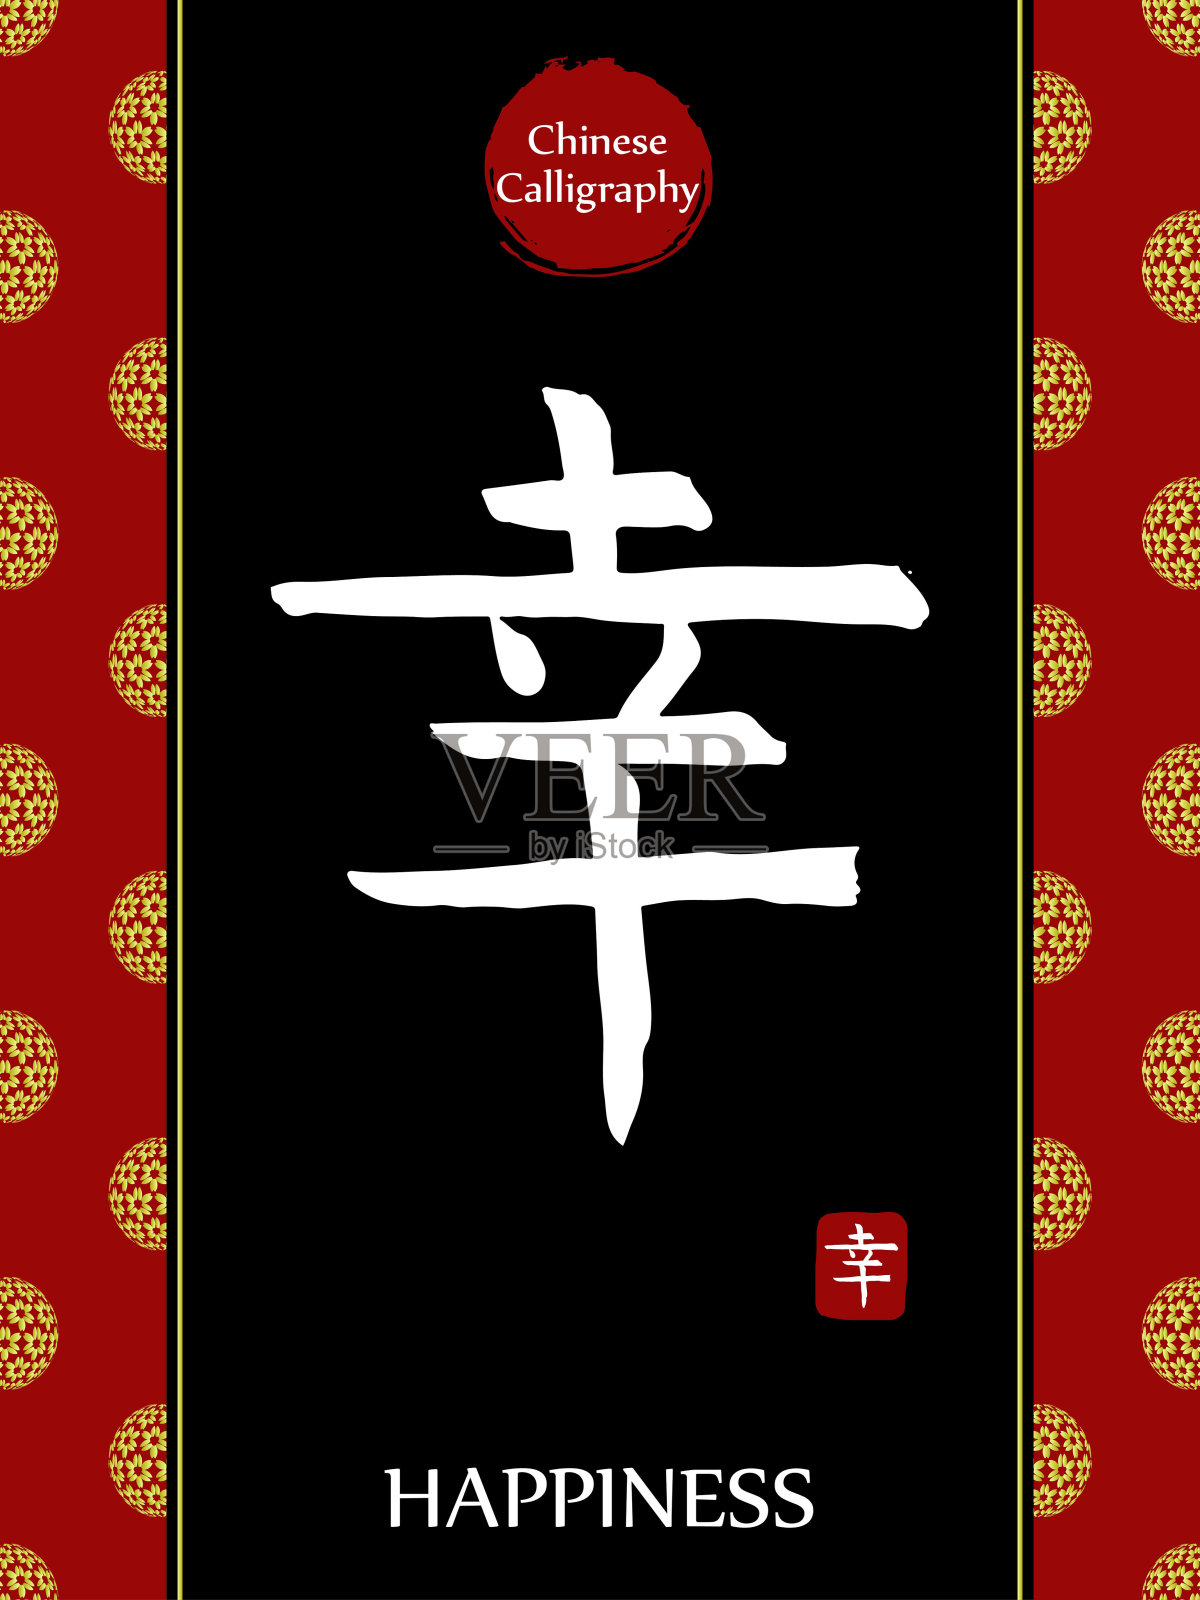 中国书法象形文字翻译:幸福。亚洲金花球农历新年图案。向量中国符号在黑色背景。手绘图画文字。毛笔书法插画图片素材